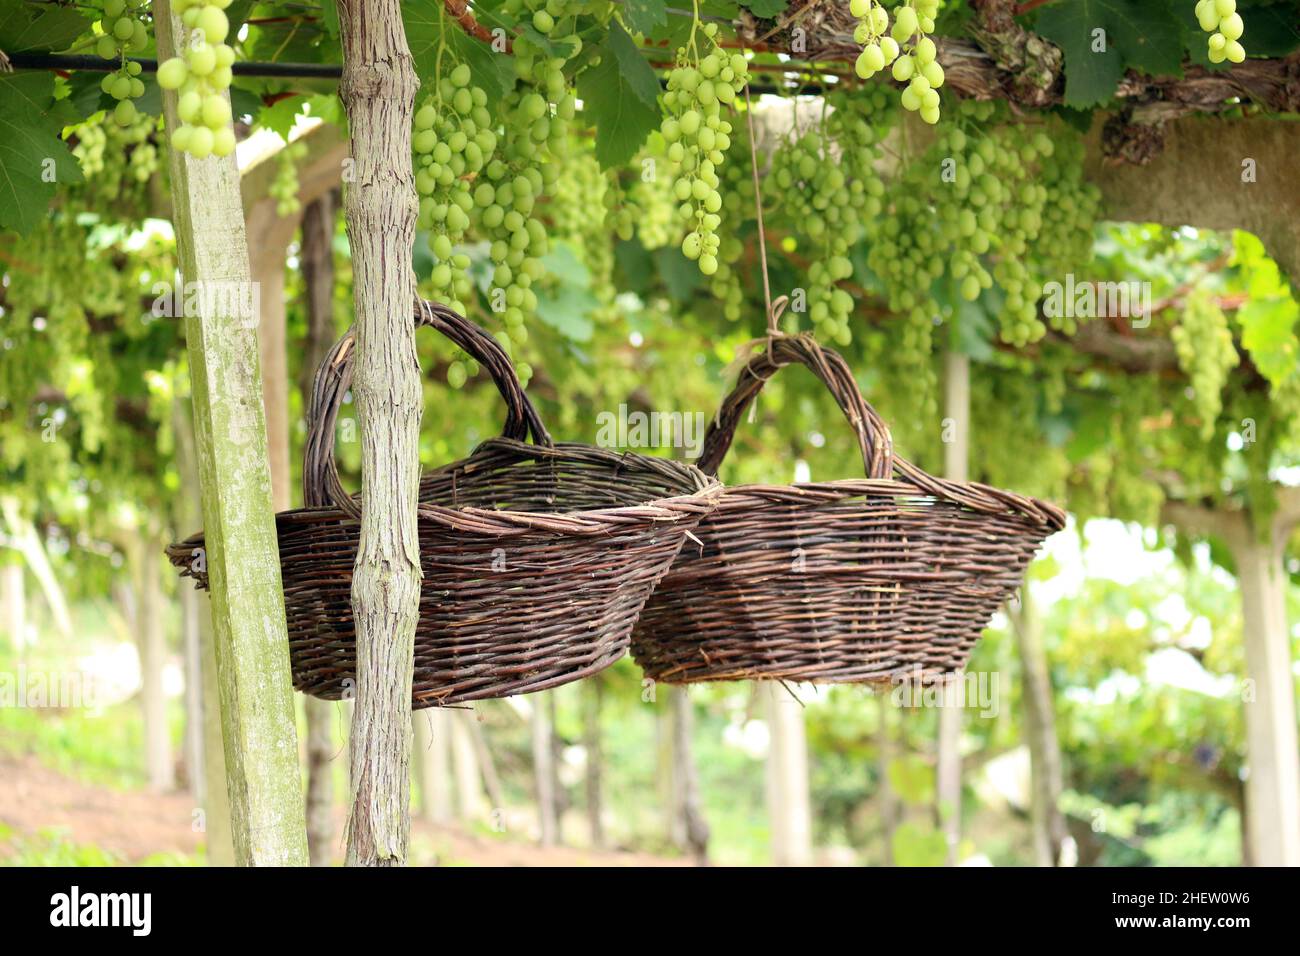 Im hinteren Teil eines riesigen Weinbergs, zwischen den großen Trauben aus grünen Trauben, hängen zwei handgemachte Körbe, die mit Weidenkörnern hergestellt wurden. Stockfoto